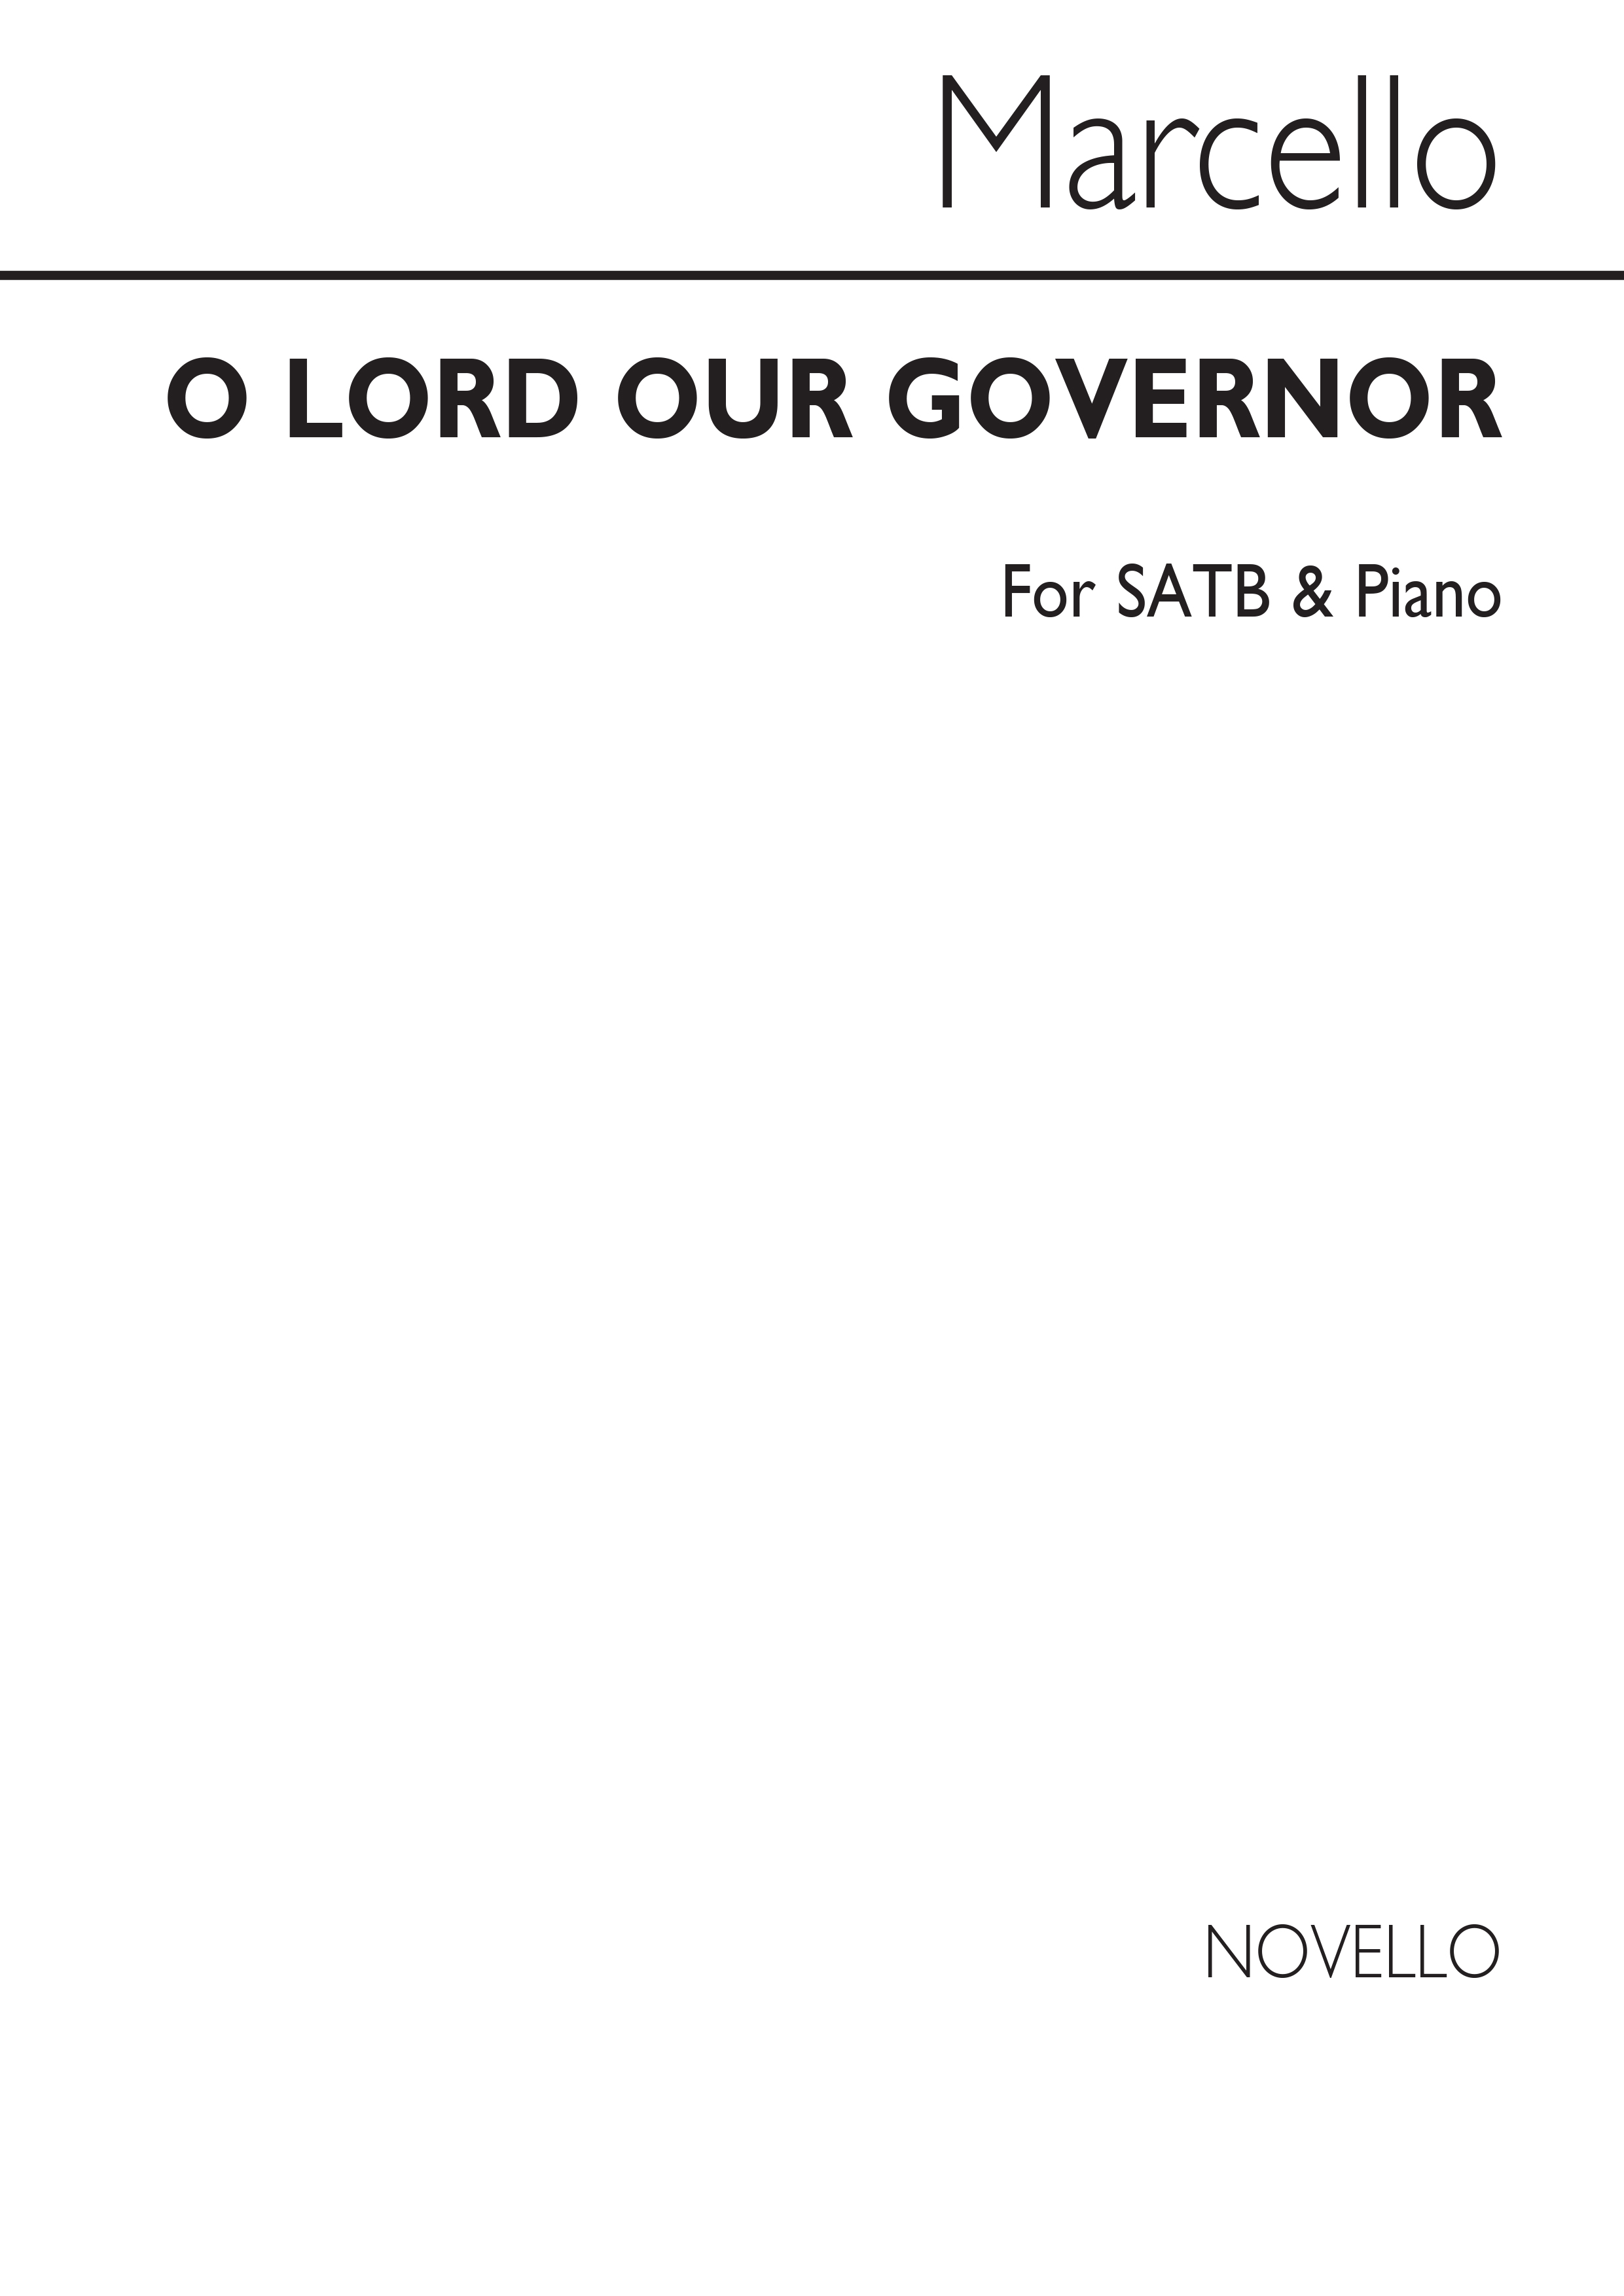 Benedetto Marcello: O Lord Our Governor Soprano/Satb/Piano